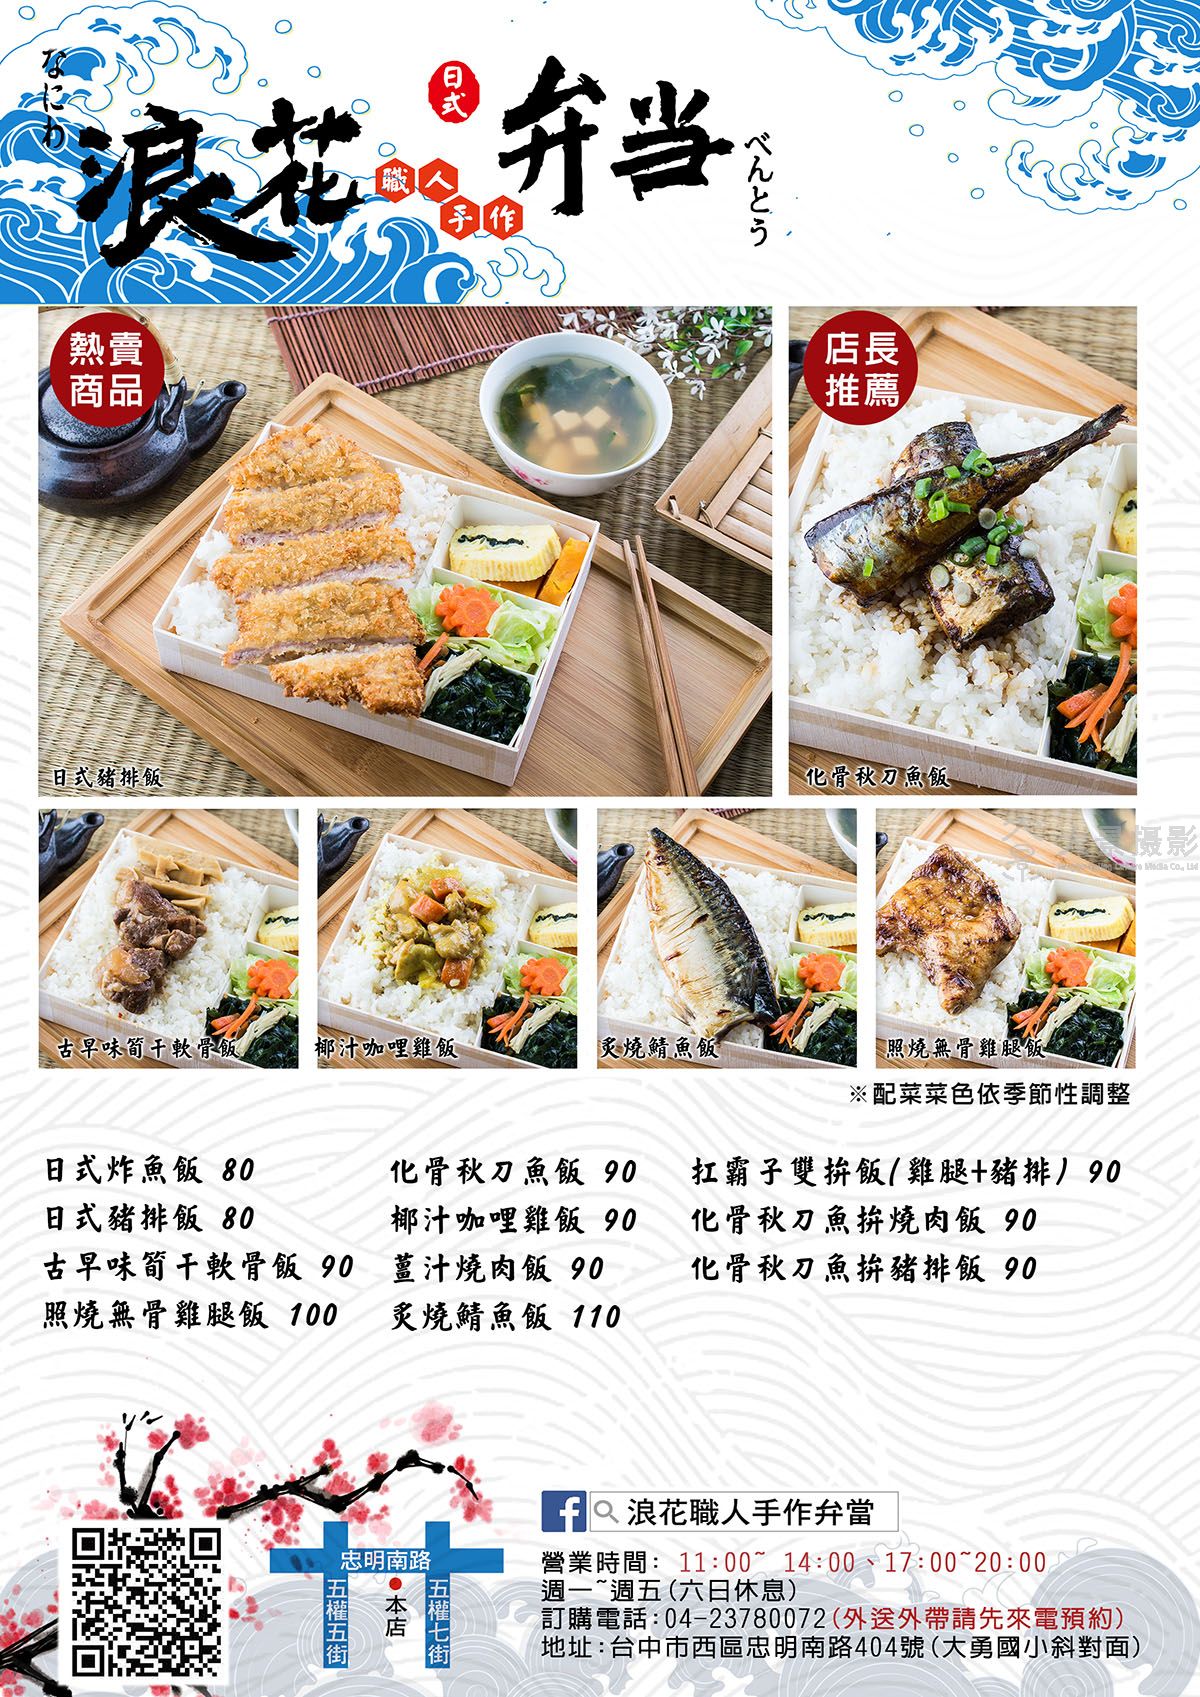 上海菜单设计价格